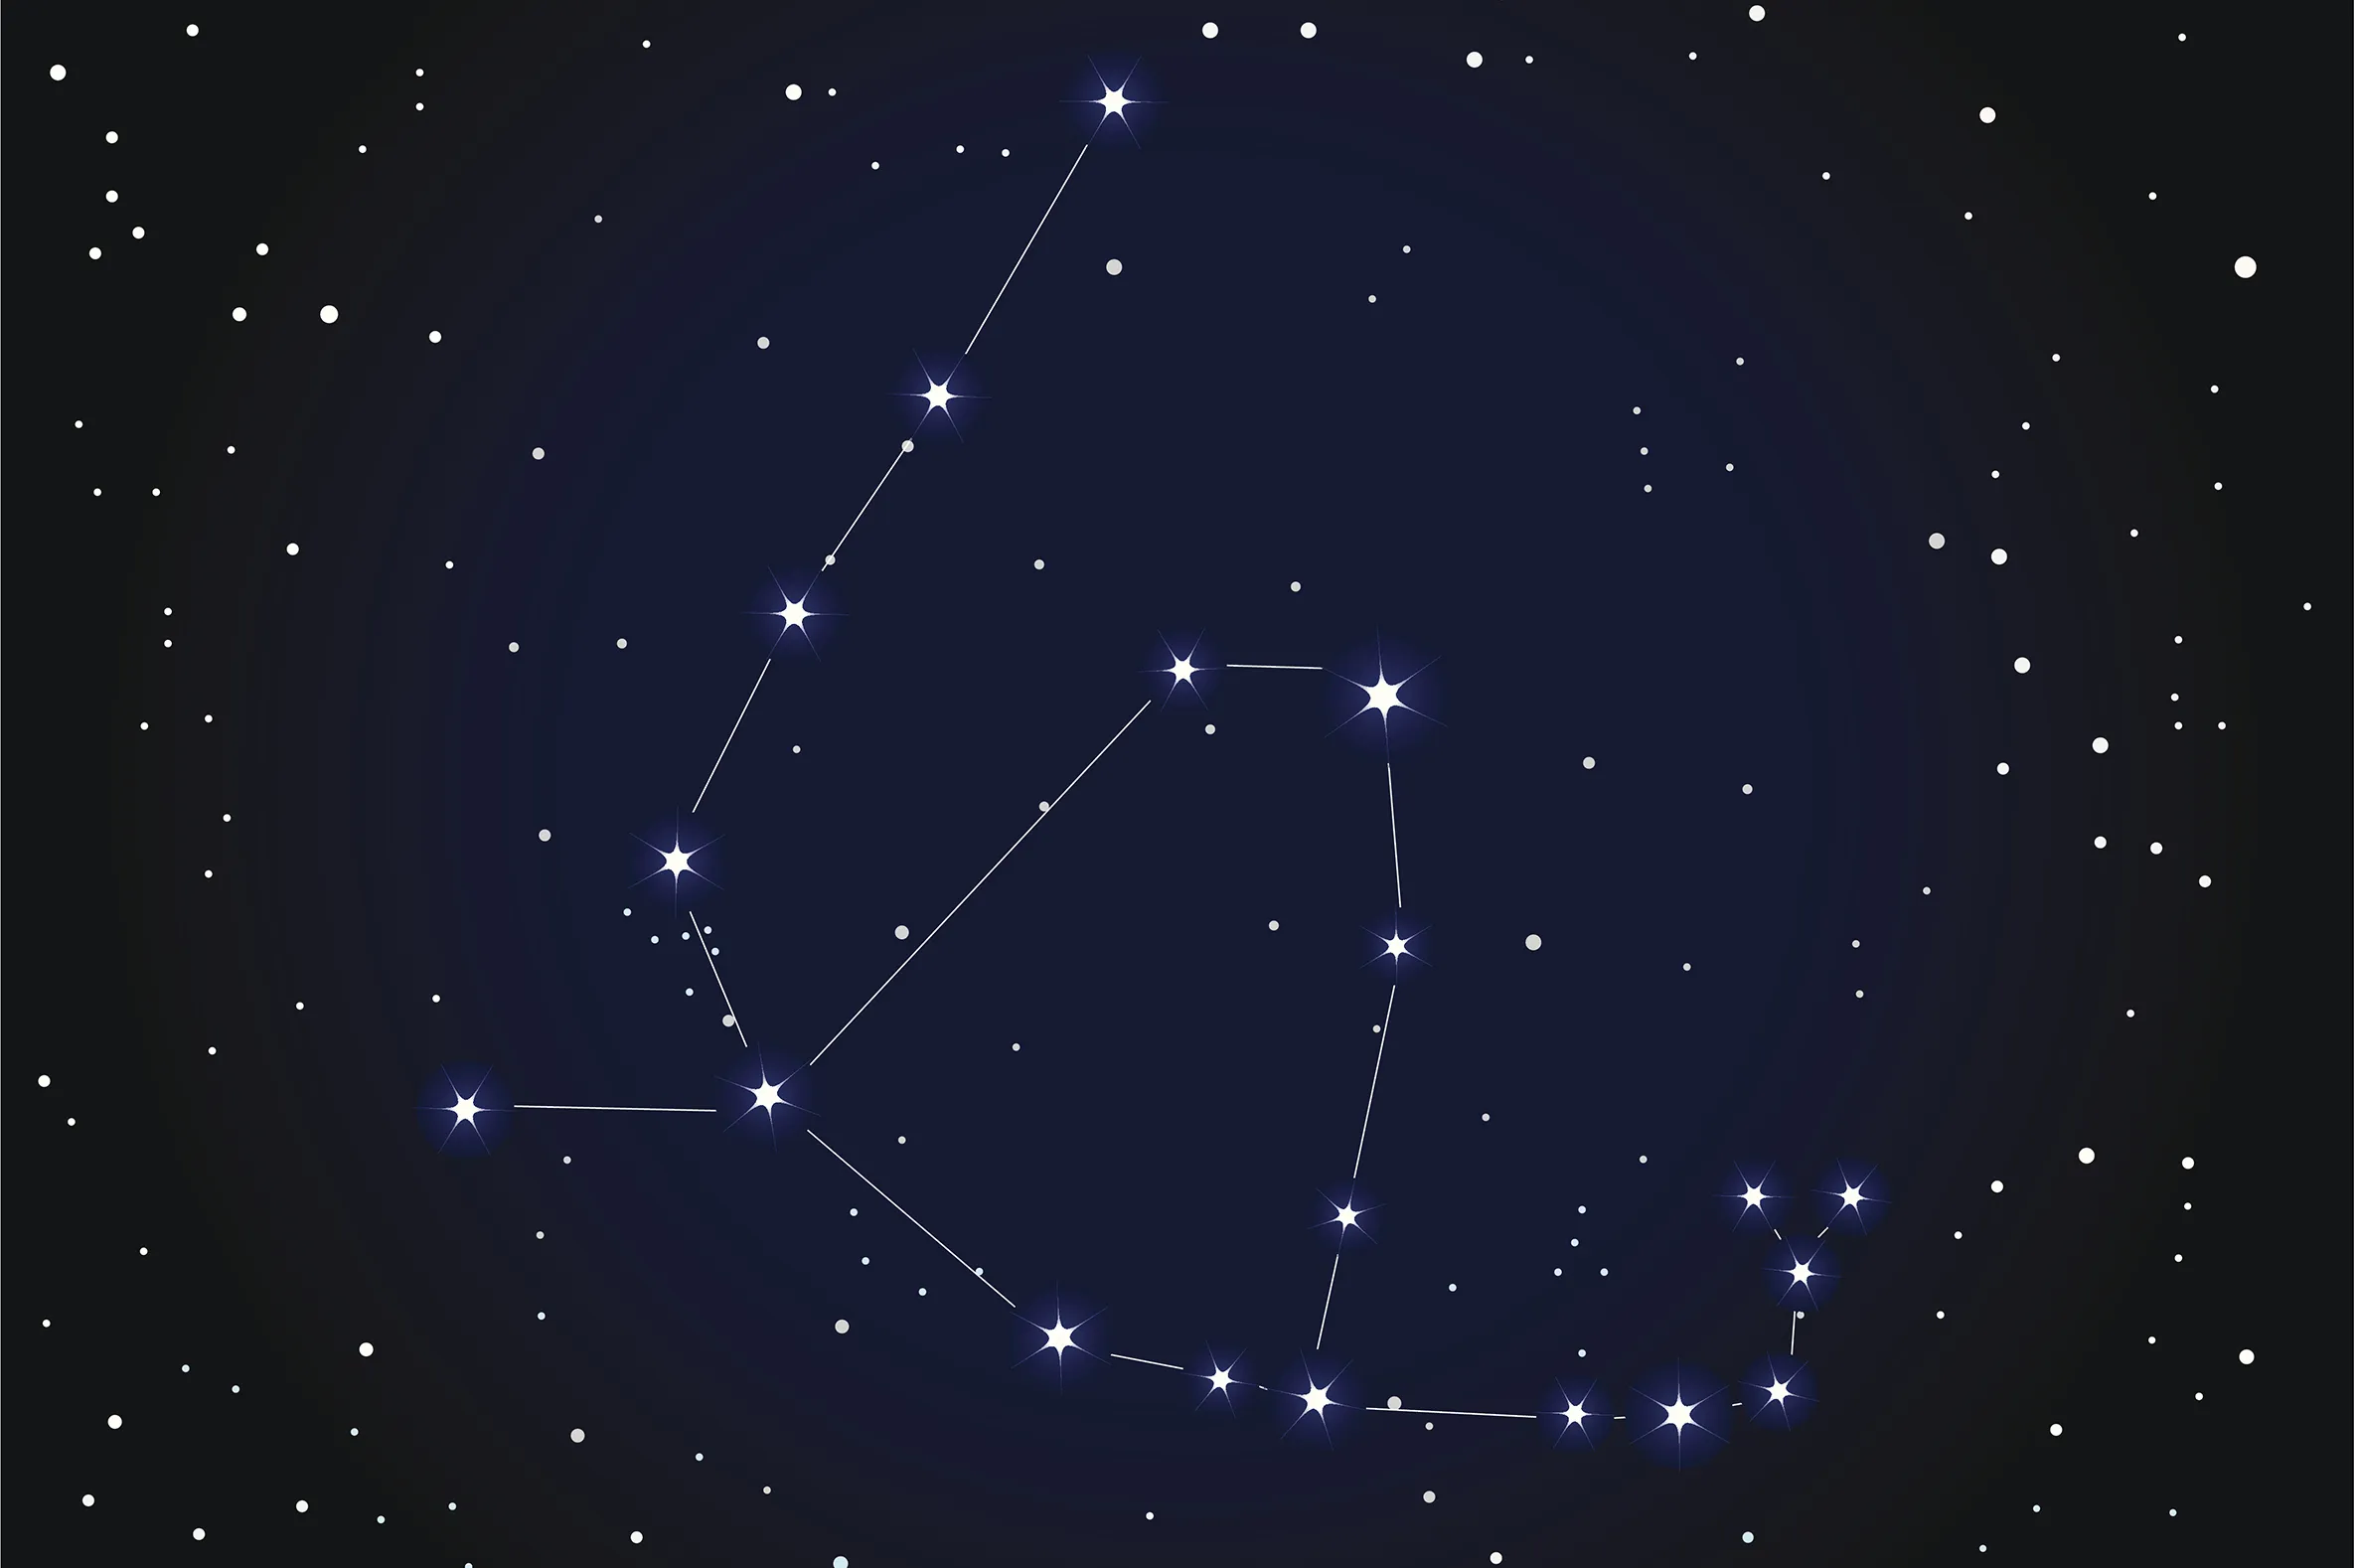 Созвездие минус. Созвездие Змееносец. Зодиакальные созвездия Змееносец. Созвездие Змееносец звезды. Созвездия (Близнецы, рыбы, Северная корона, большой пёс).